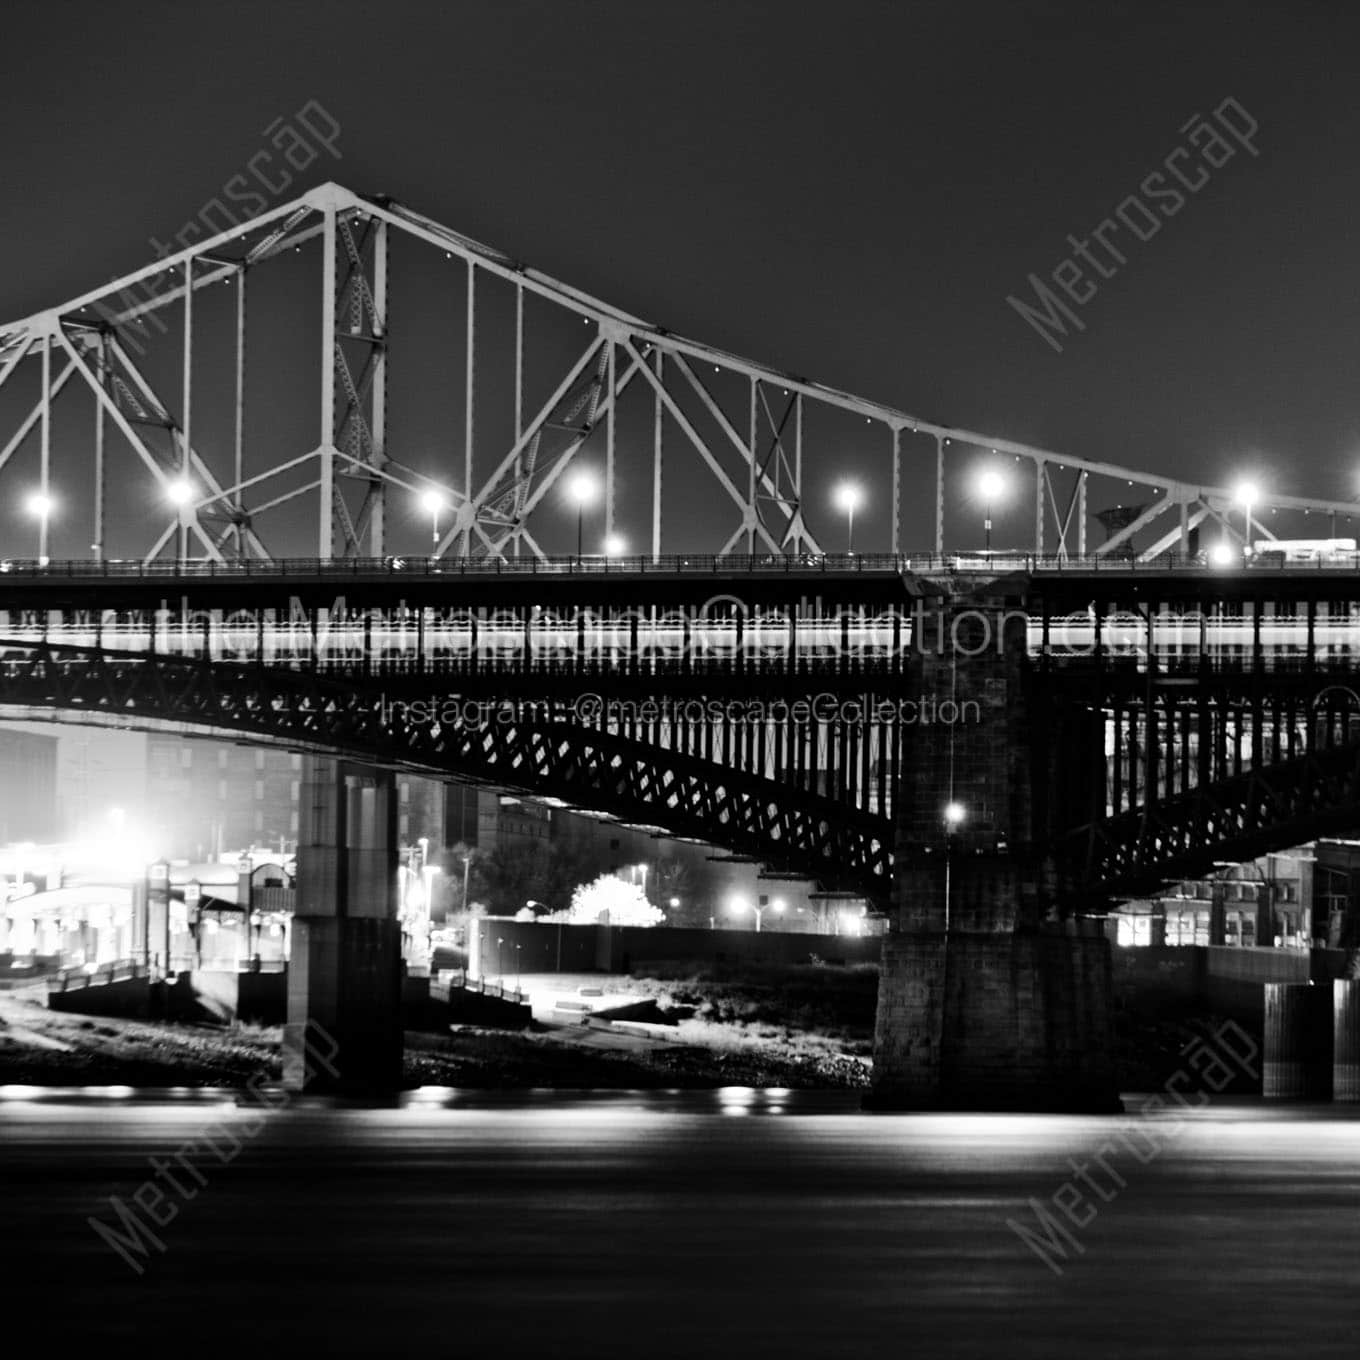 mlk jr eads bridges at night Black & White Office Art